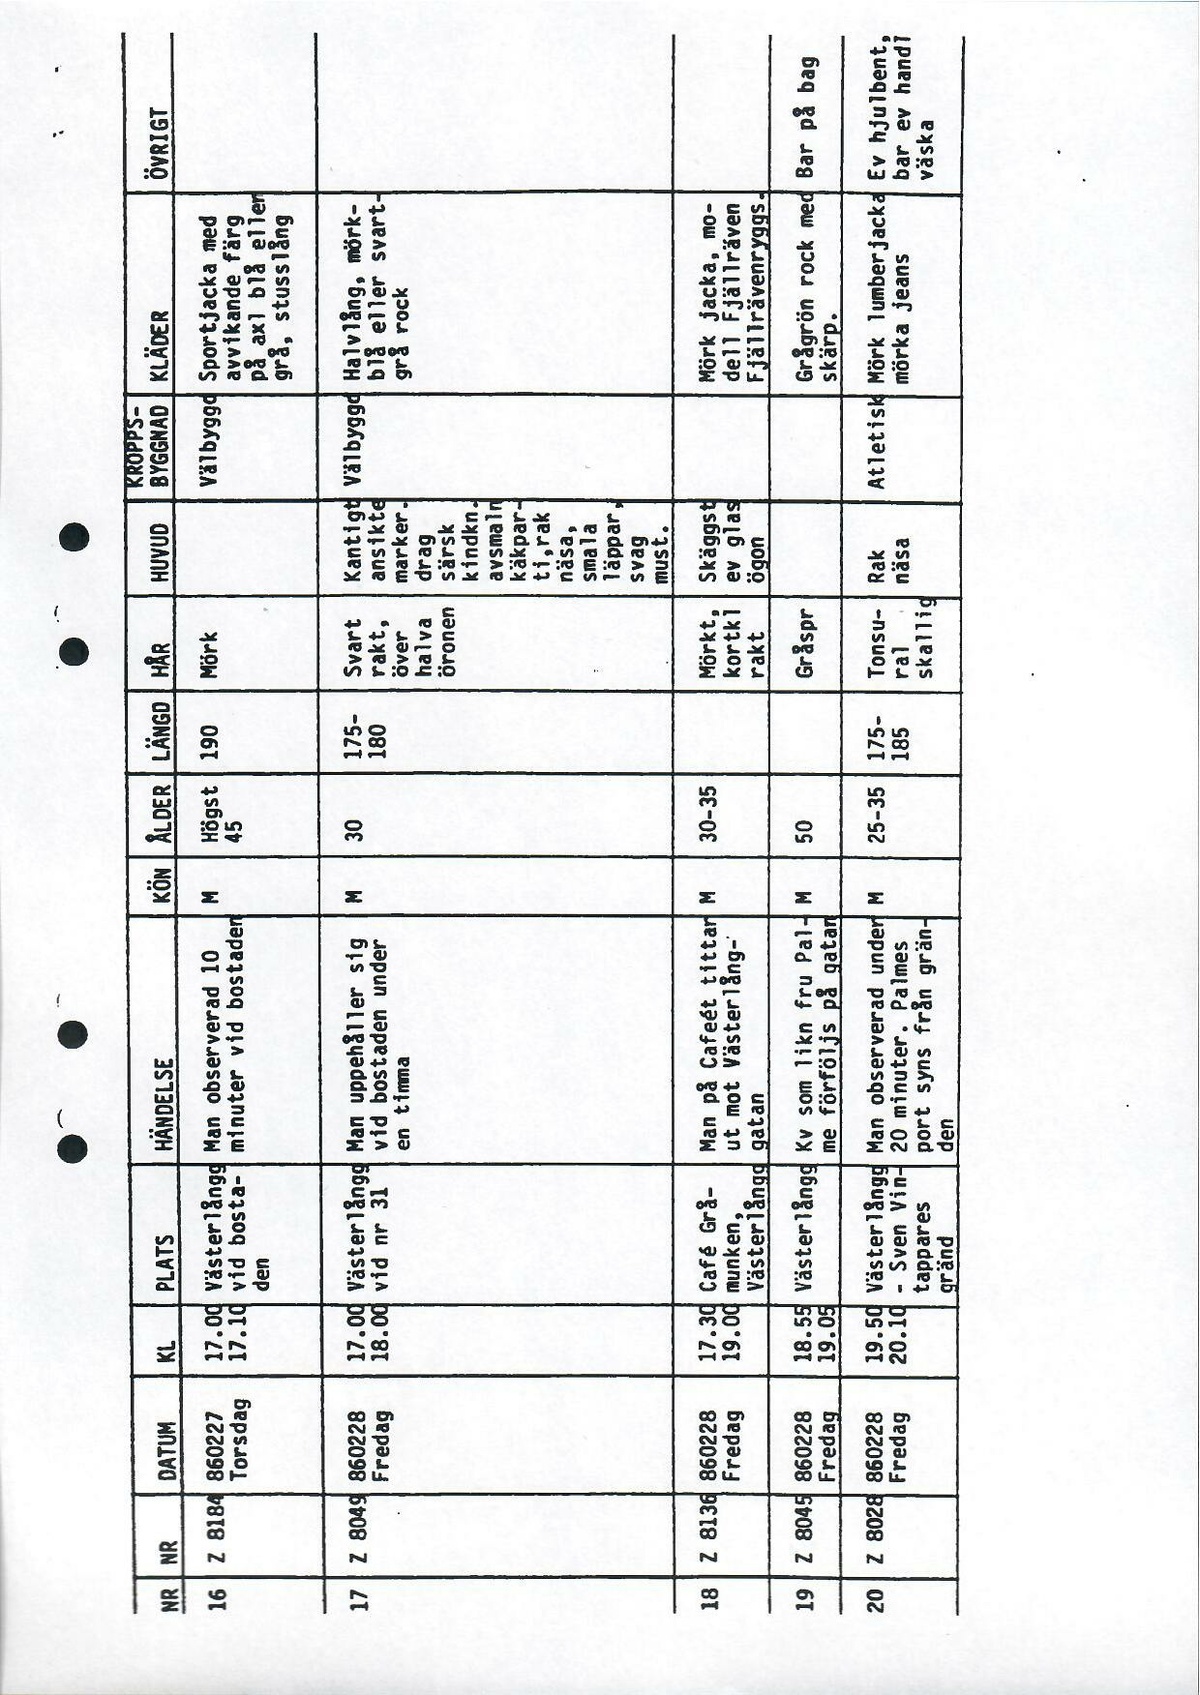 Pol-1986-04-24 A11544-00 Sammanställning över tips tablå.pdf